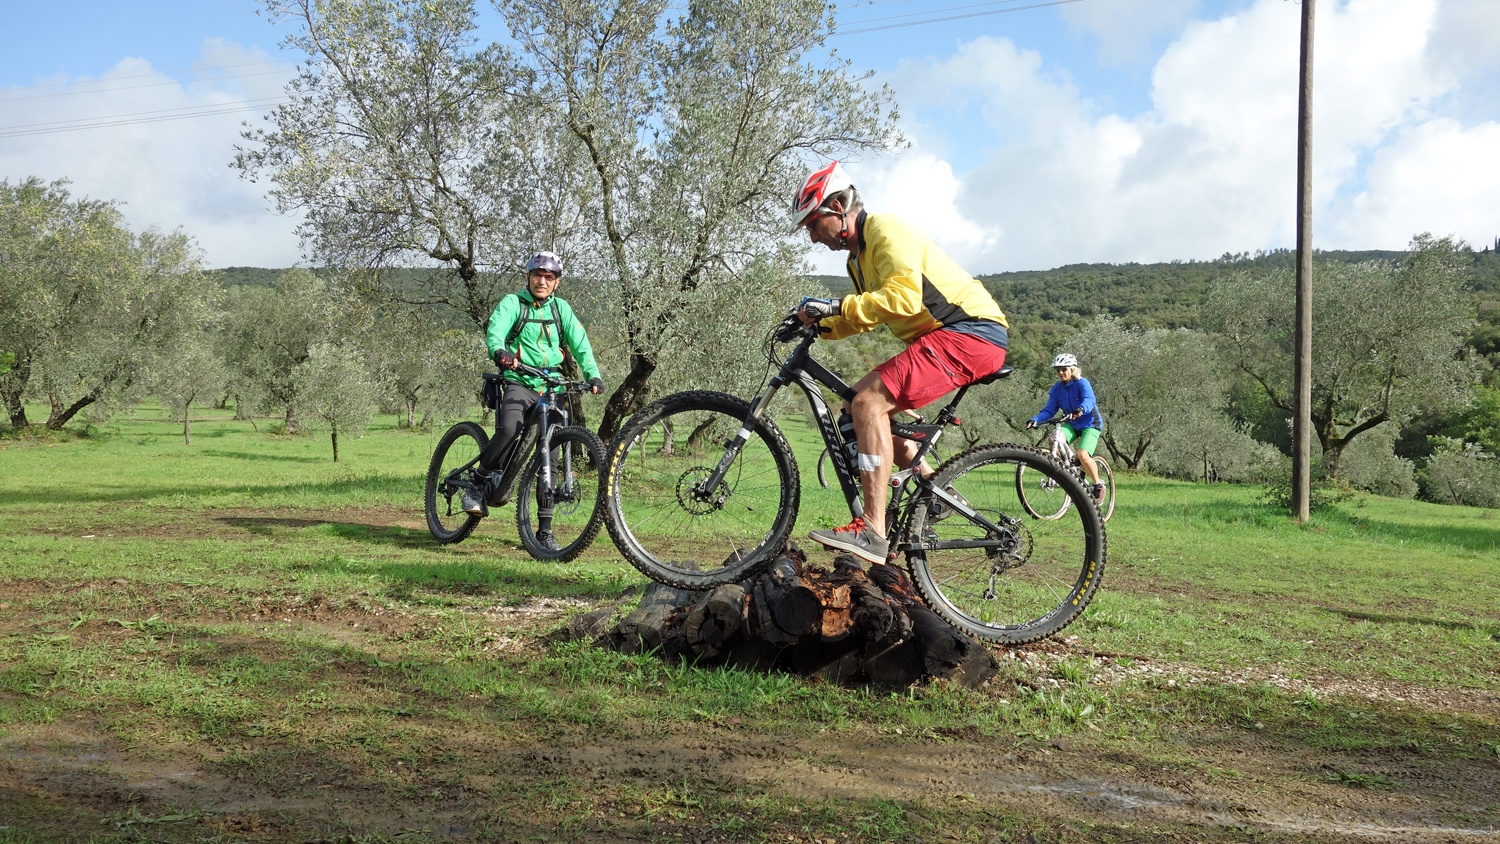 Bikeferien in der Toscana - Woche 41 - Ramona besucht mtbeer